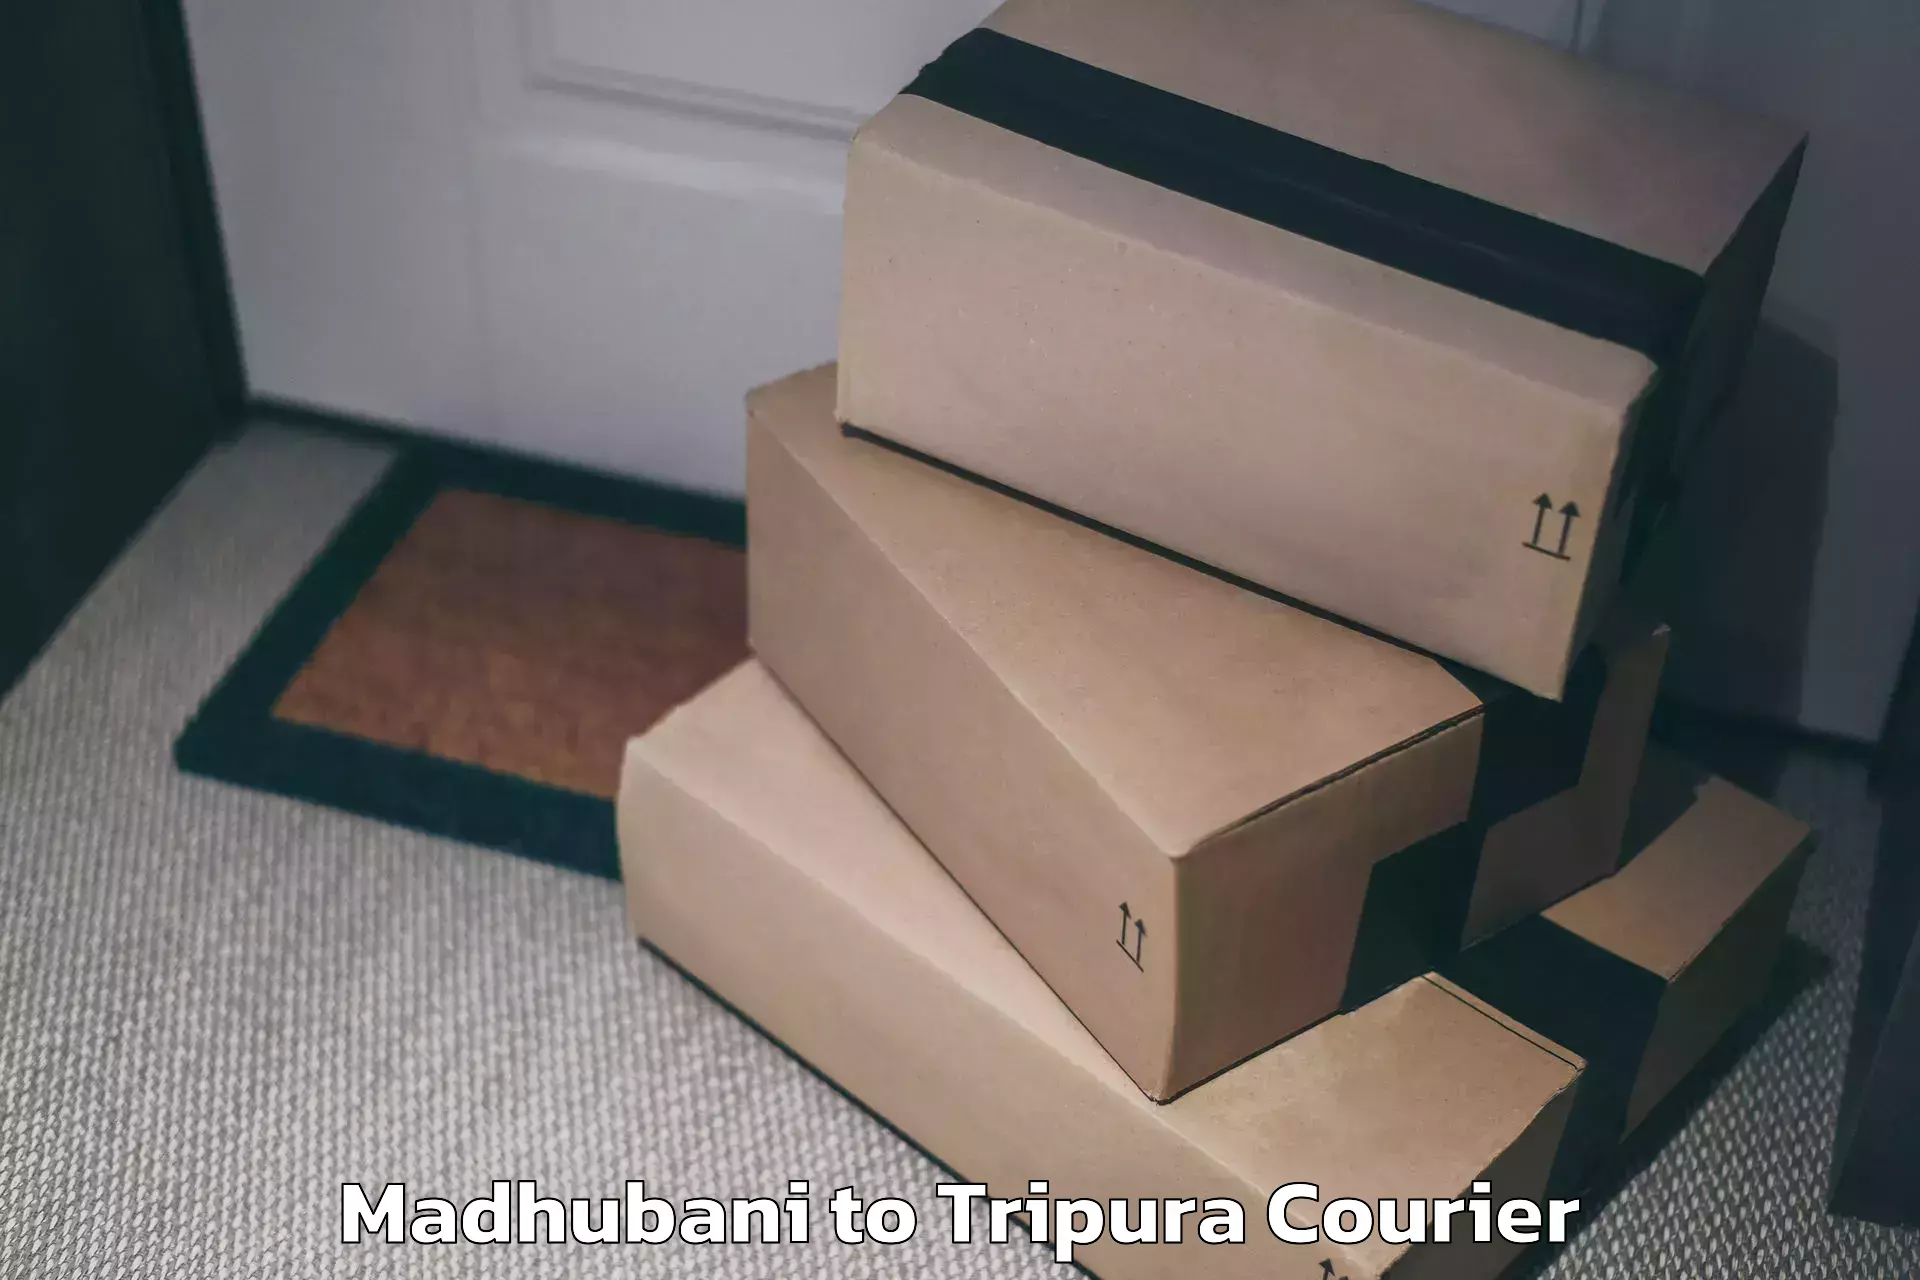 Luggage delivery rates Madhubani to Amarpur